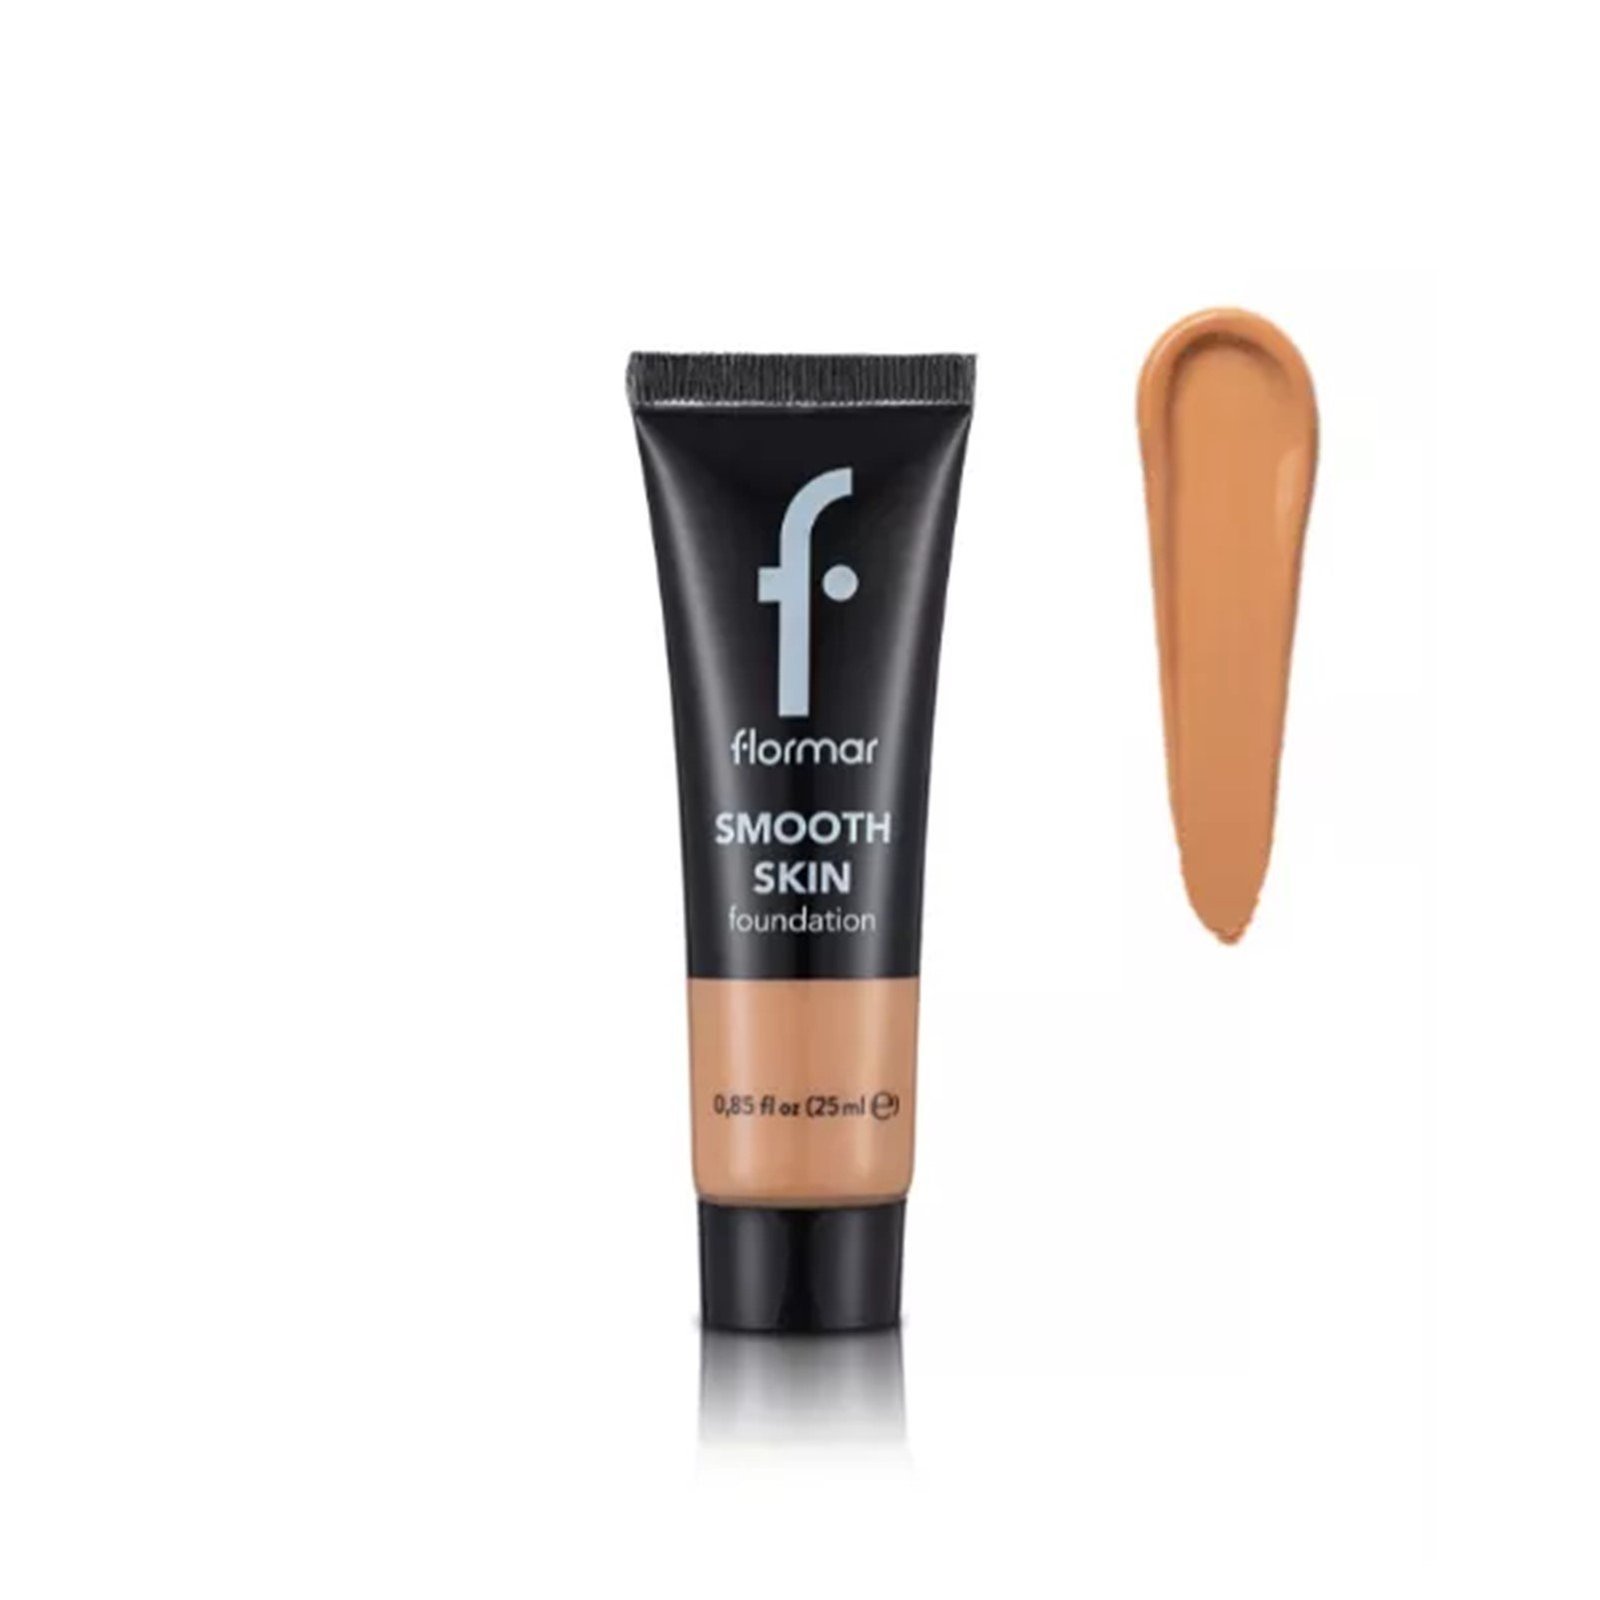 Flormar Smooth Skin Foundation 005 Medium Beige 25ml (0.85 fl oz)